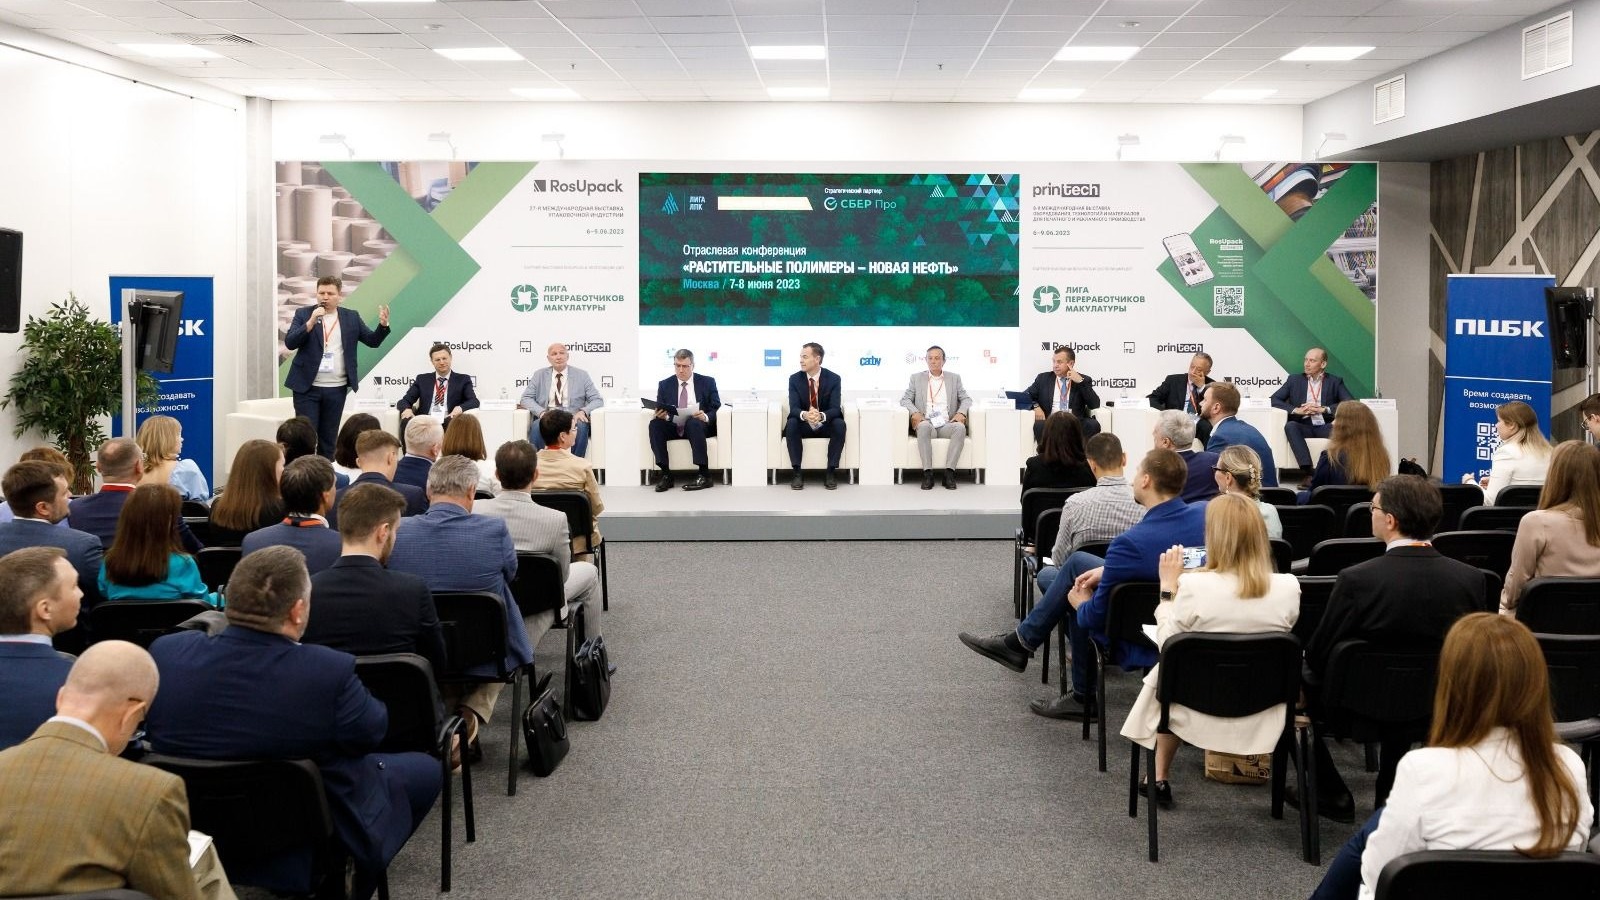 Пермская ЦБК представила упаковочную продукцию на выставке RosUpack 2023 в Москве